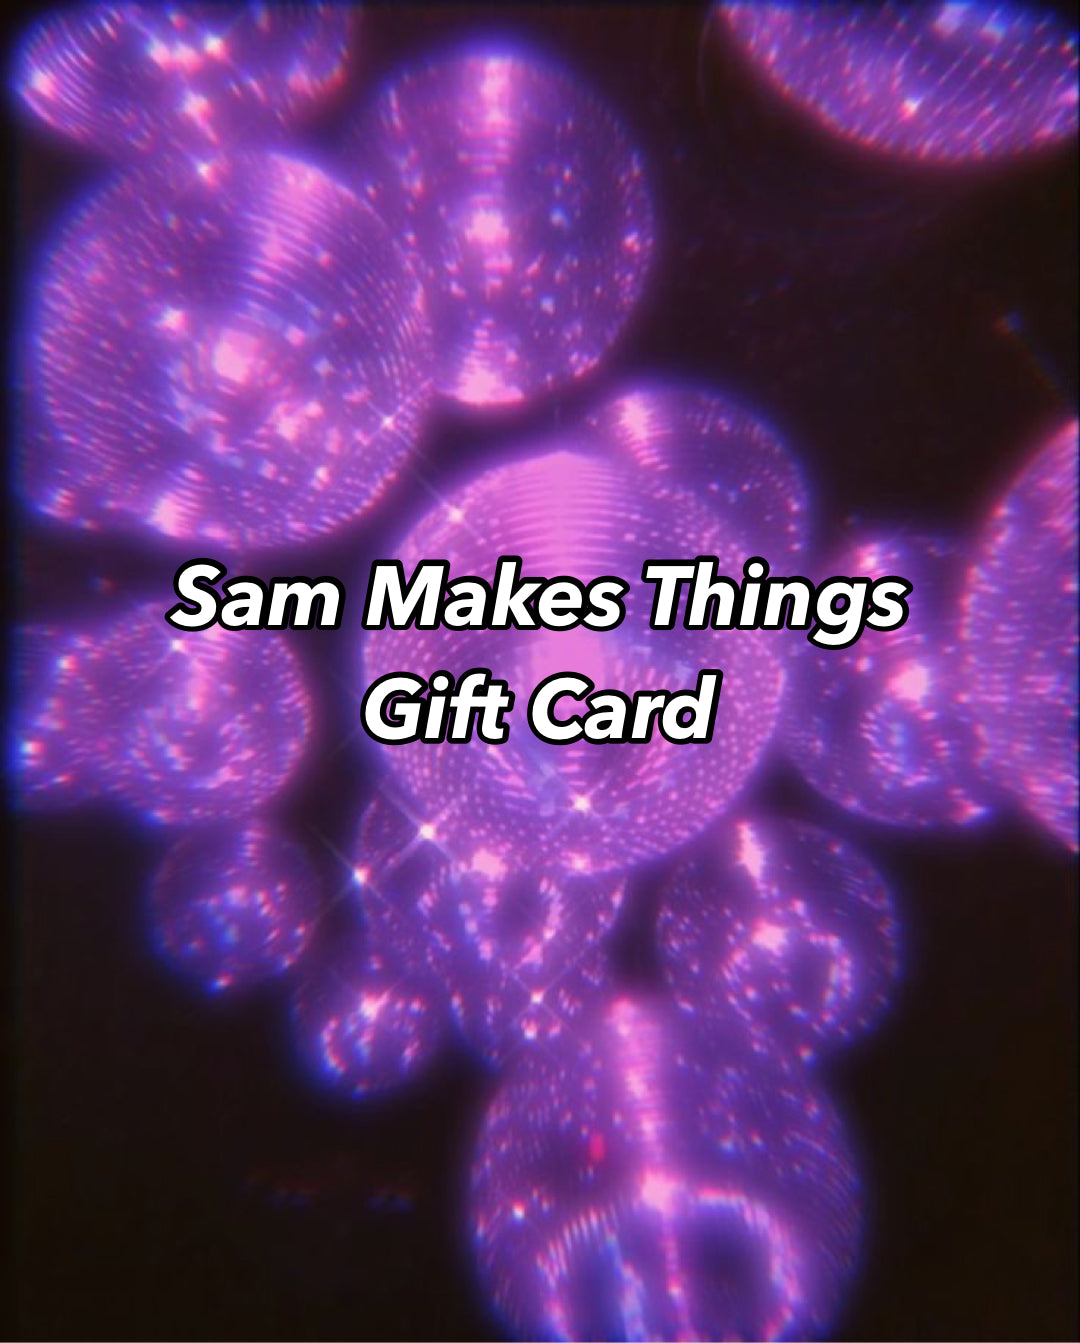 Sam Makes Things Gift Card